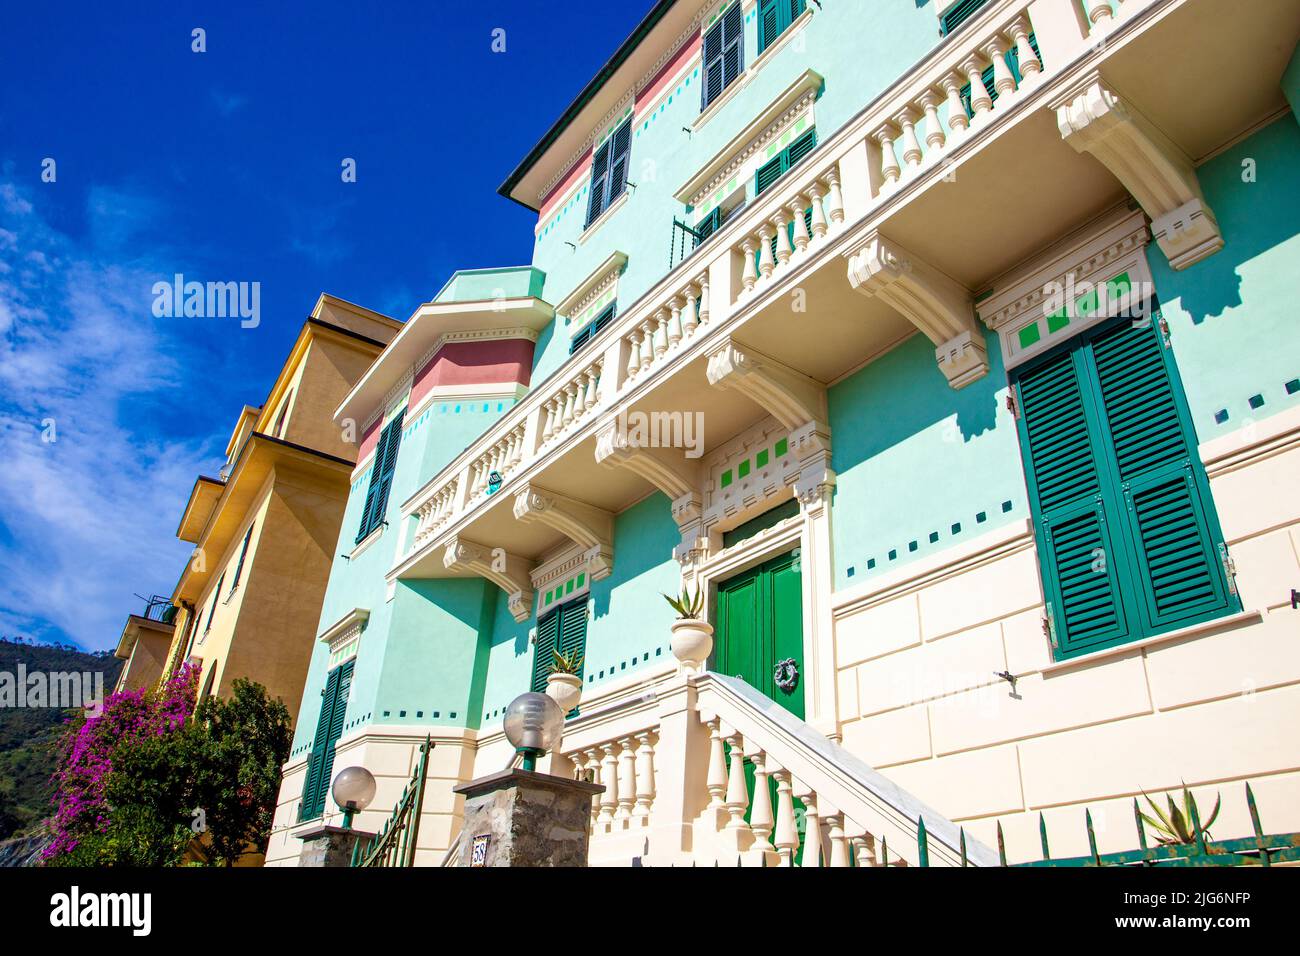 Colourful houses along the seaside promenade in Monterosso Al Mare, Cinque Terre, La Spezia, Italy Stock Photo